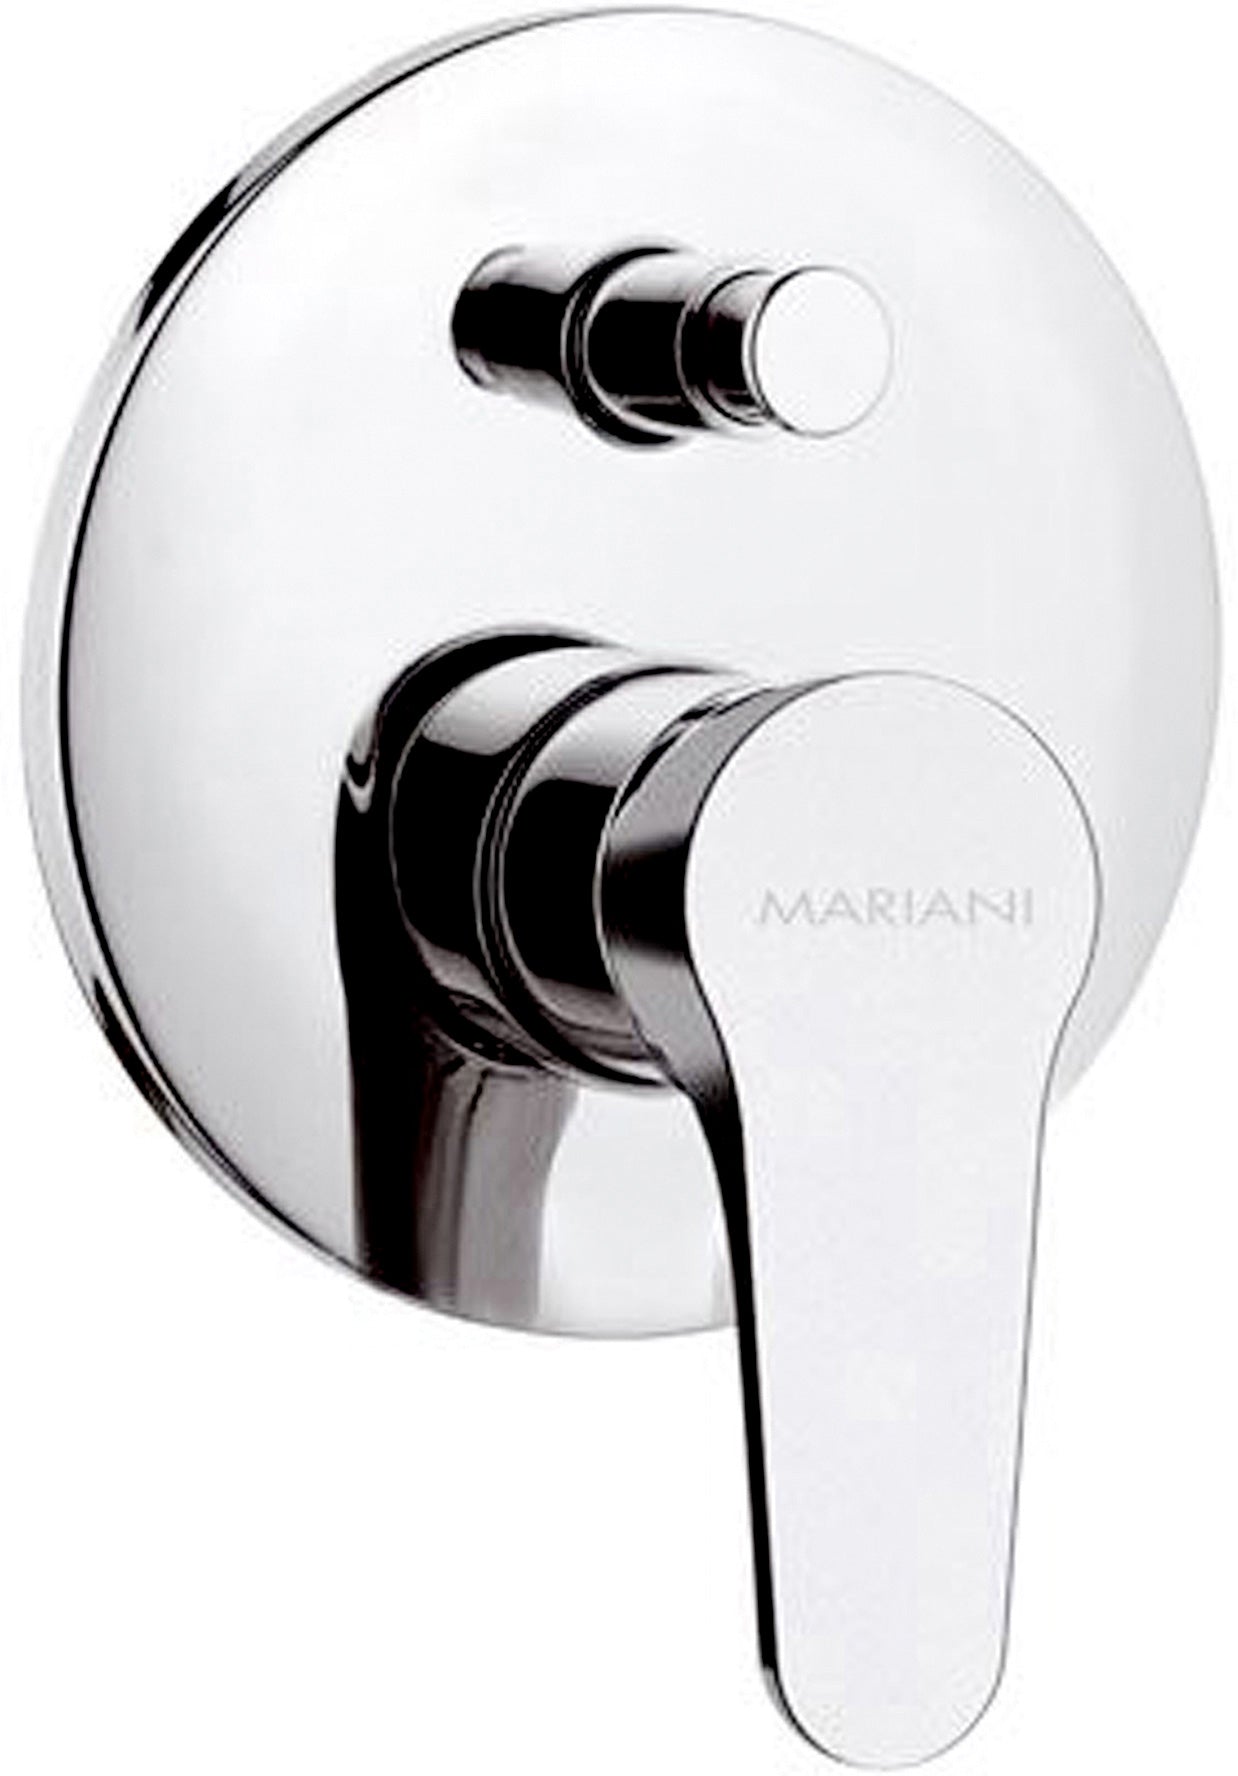 Rubinetterie Mariani Surf rubinetto miscelatore incasso doccia con deviatore